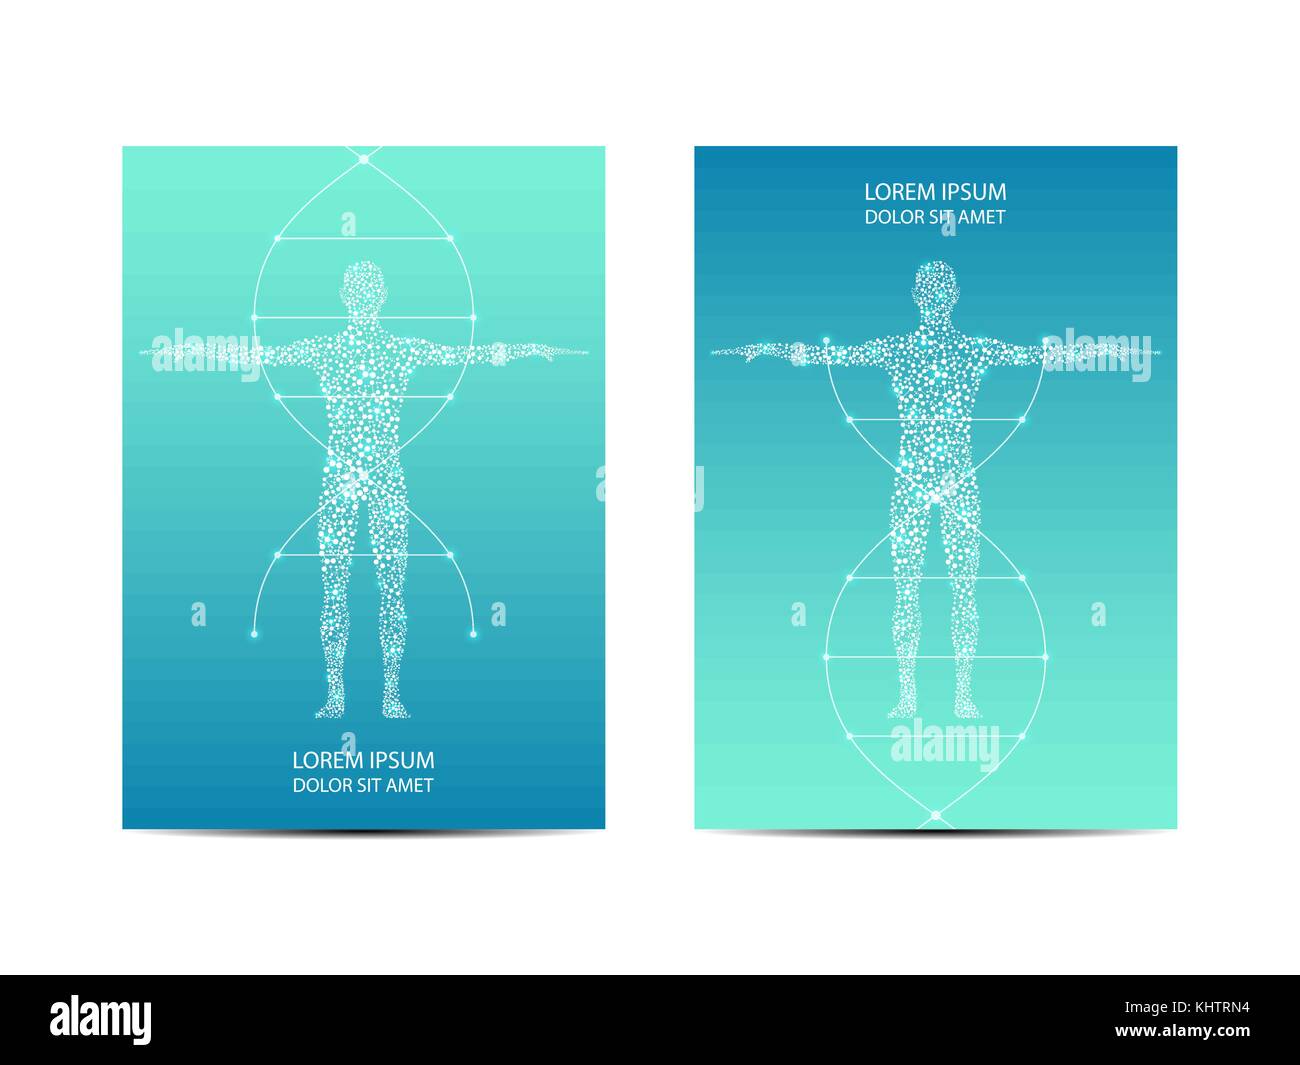 Couvrir ou poster design avec corps humain, scientifique et technologique, concept illustration vectorielle. Illustration de Vecteur